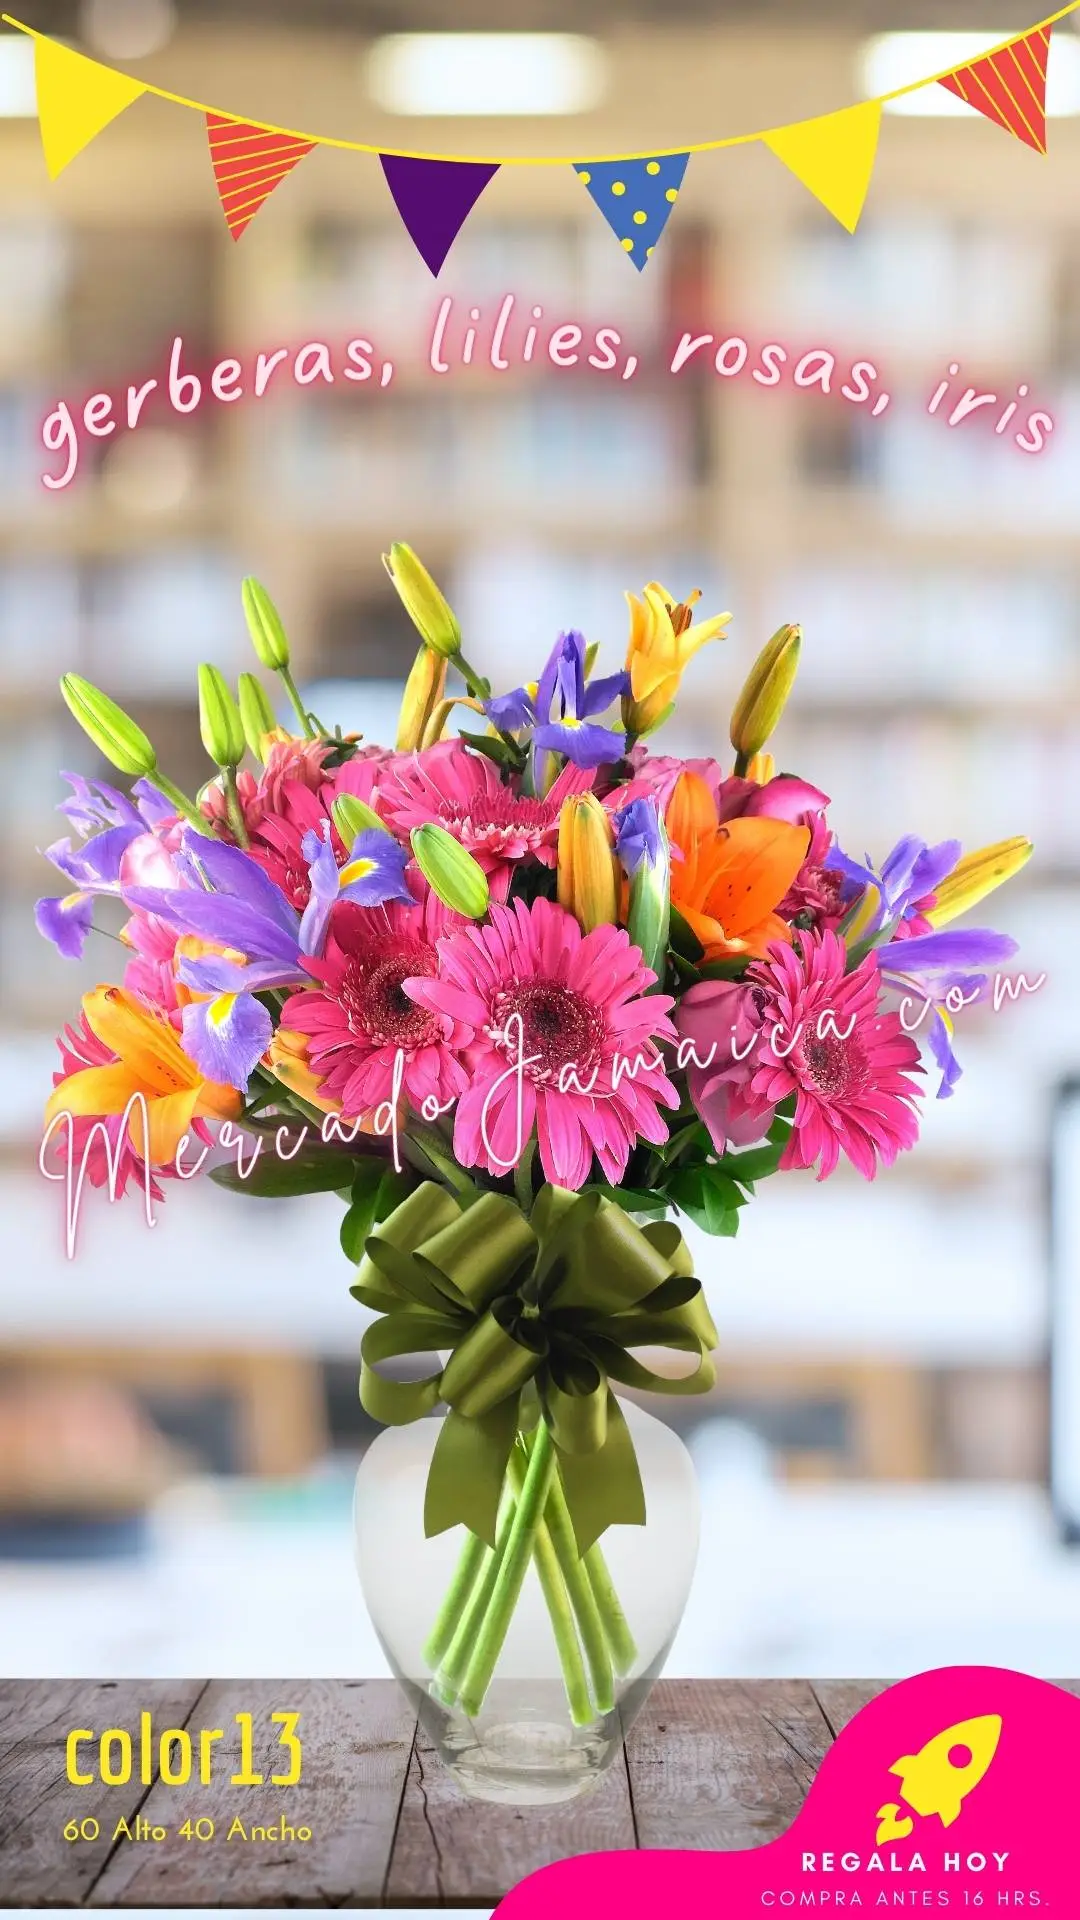 Arreglo floral con 43 flores frescas llenas de color